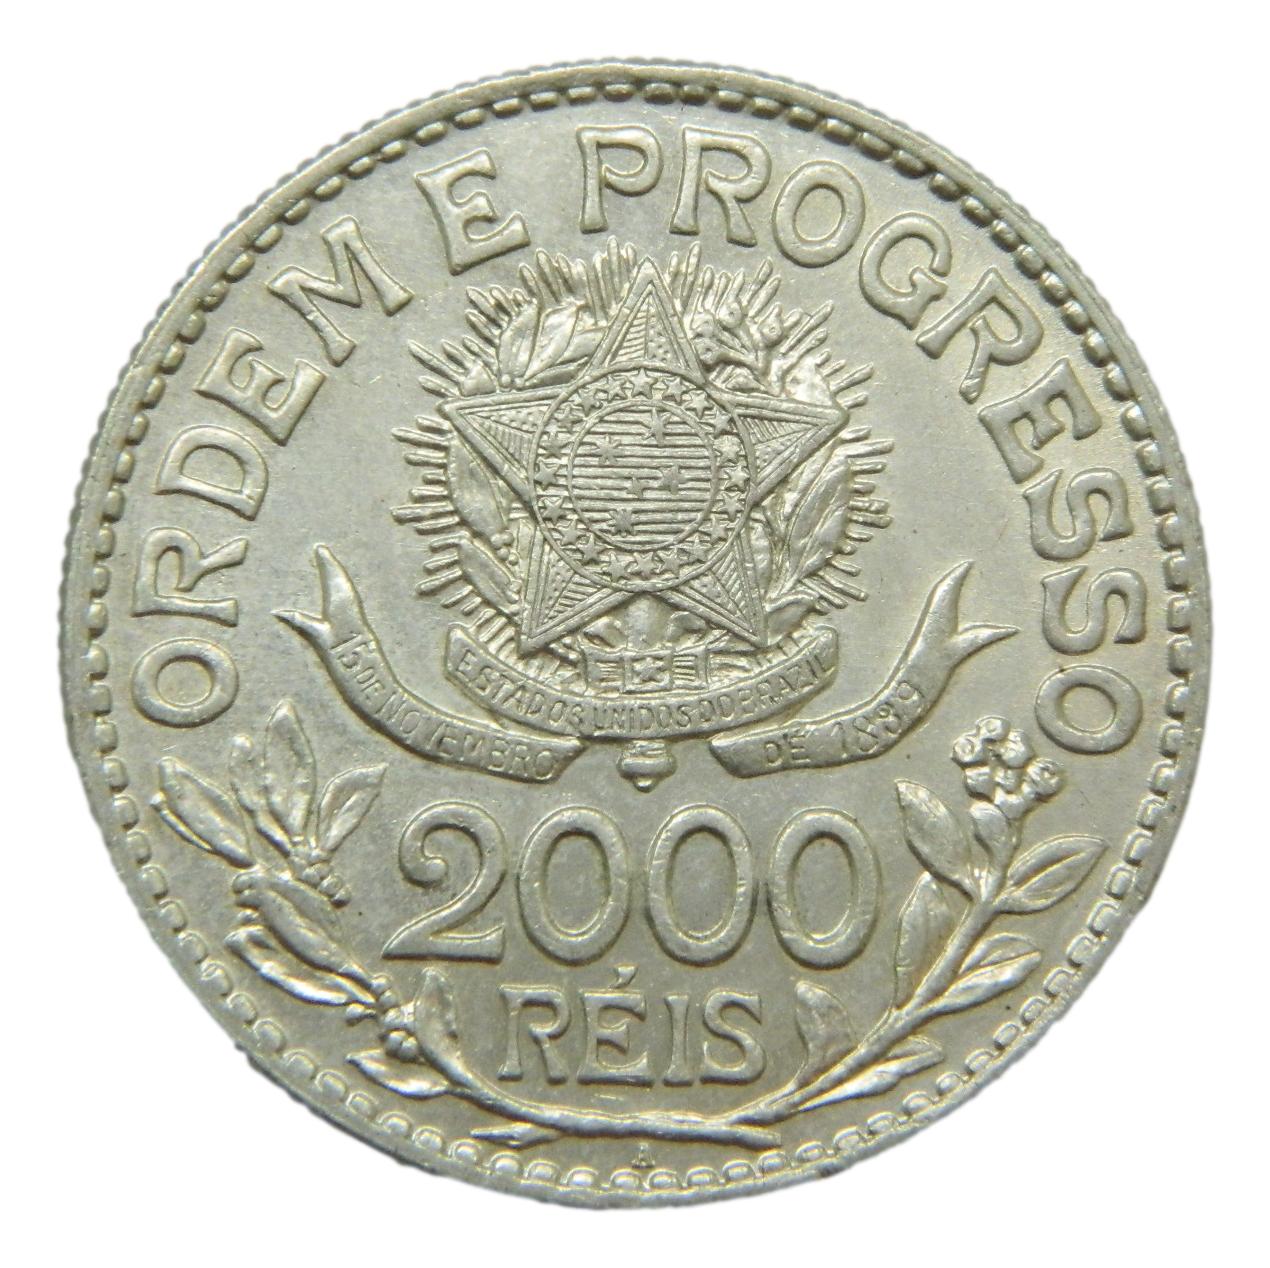 1913 - BRASIL - 2000 REIS - PLATA